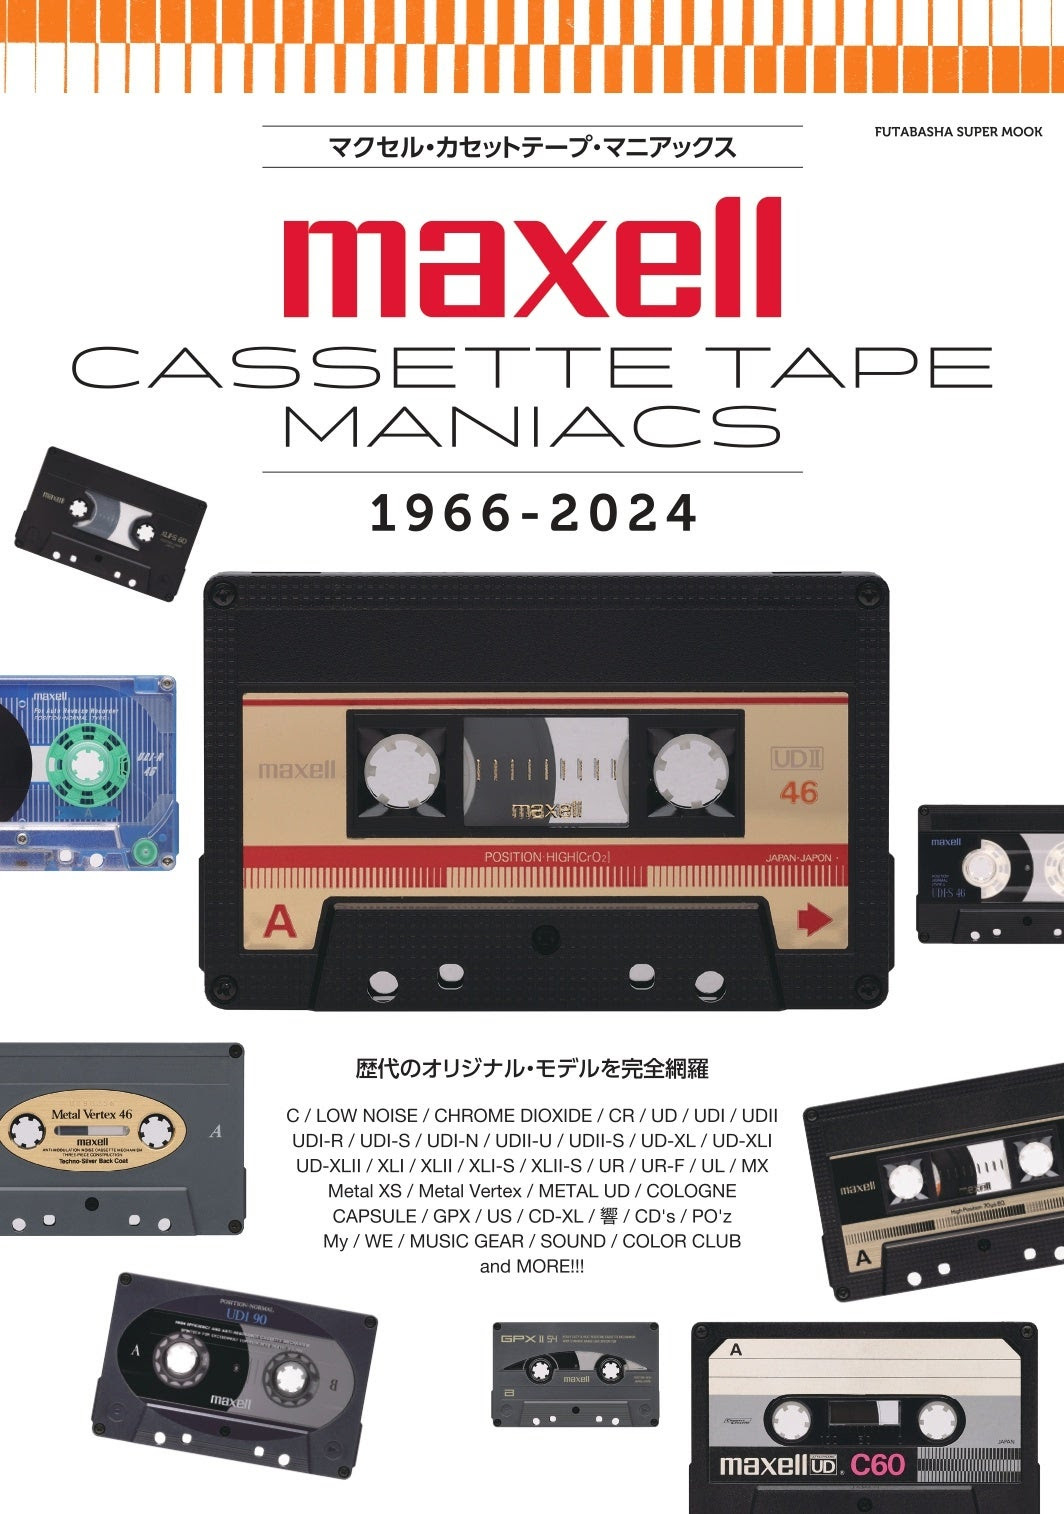 ムック『マクセル・カセットテープ・マニアックス』発売中。全種完全 